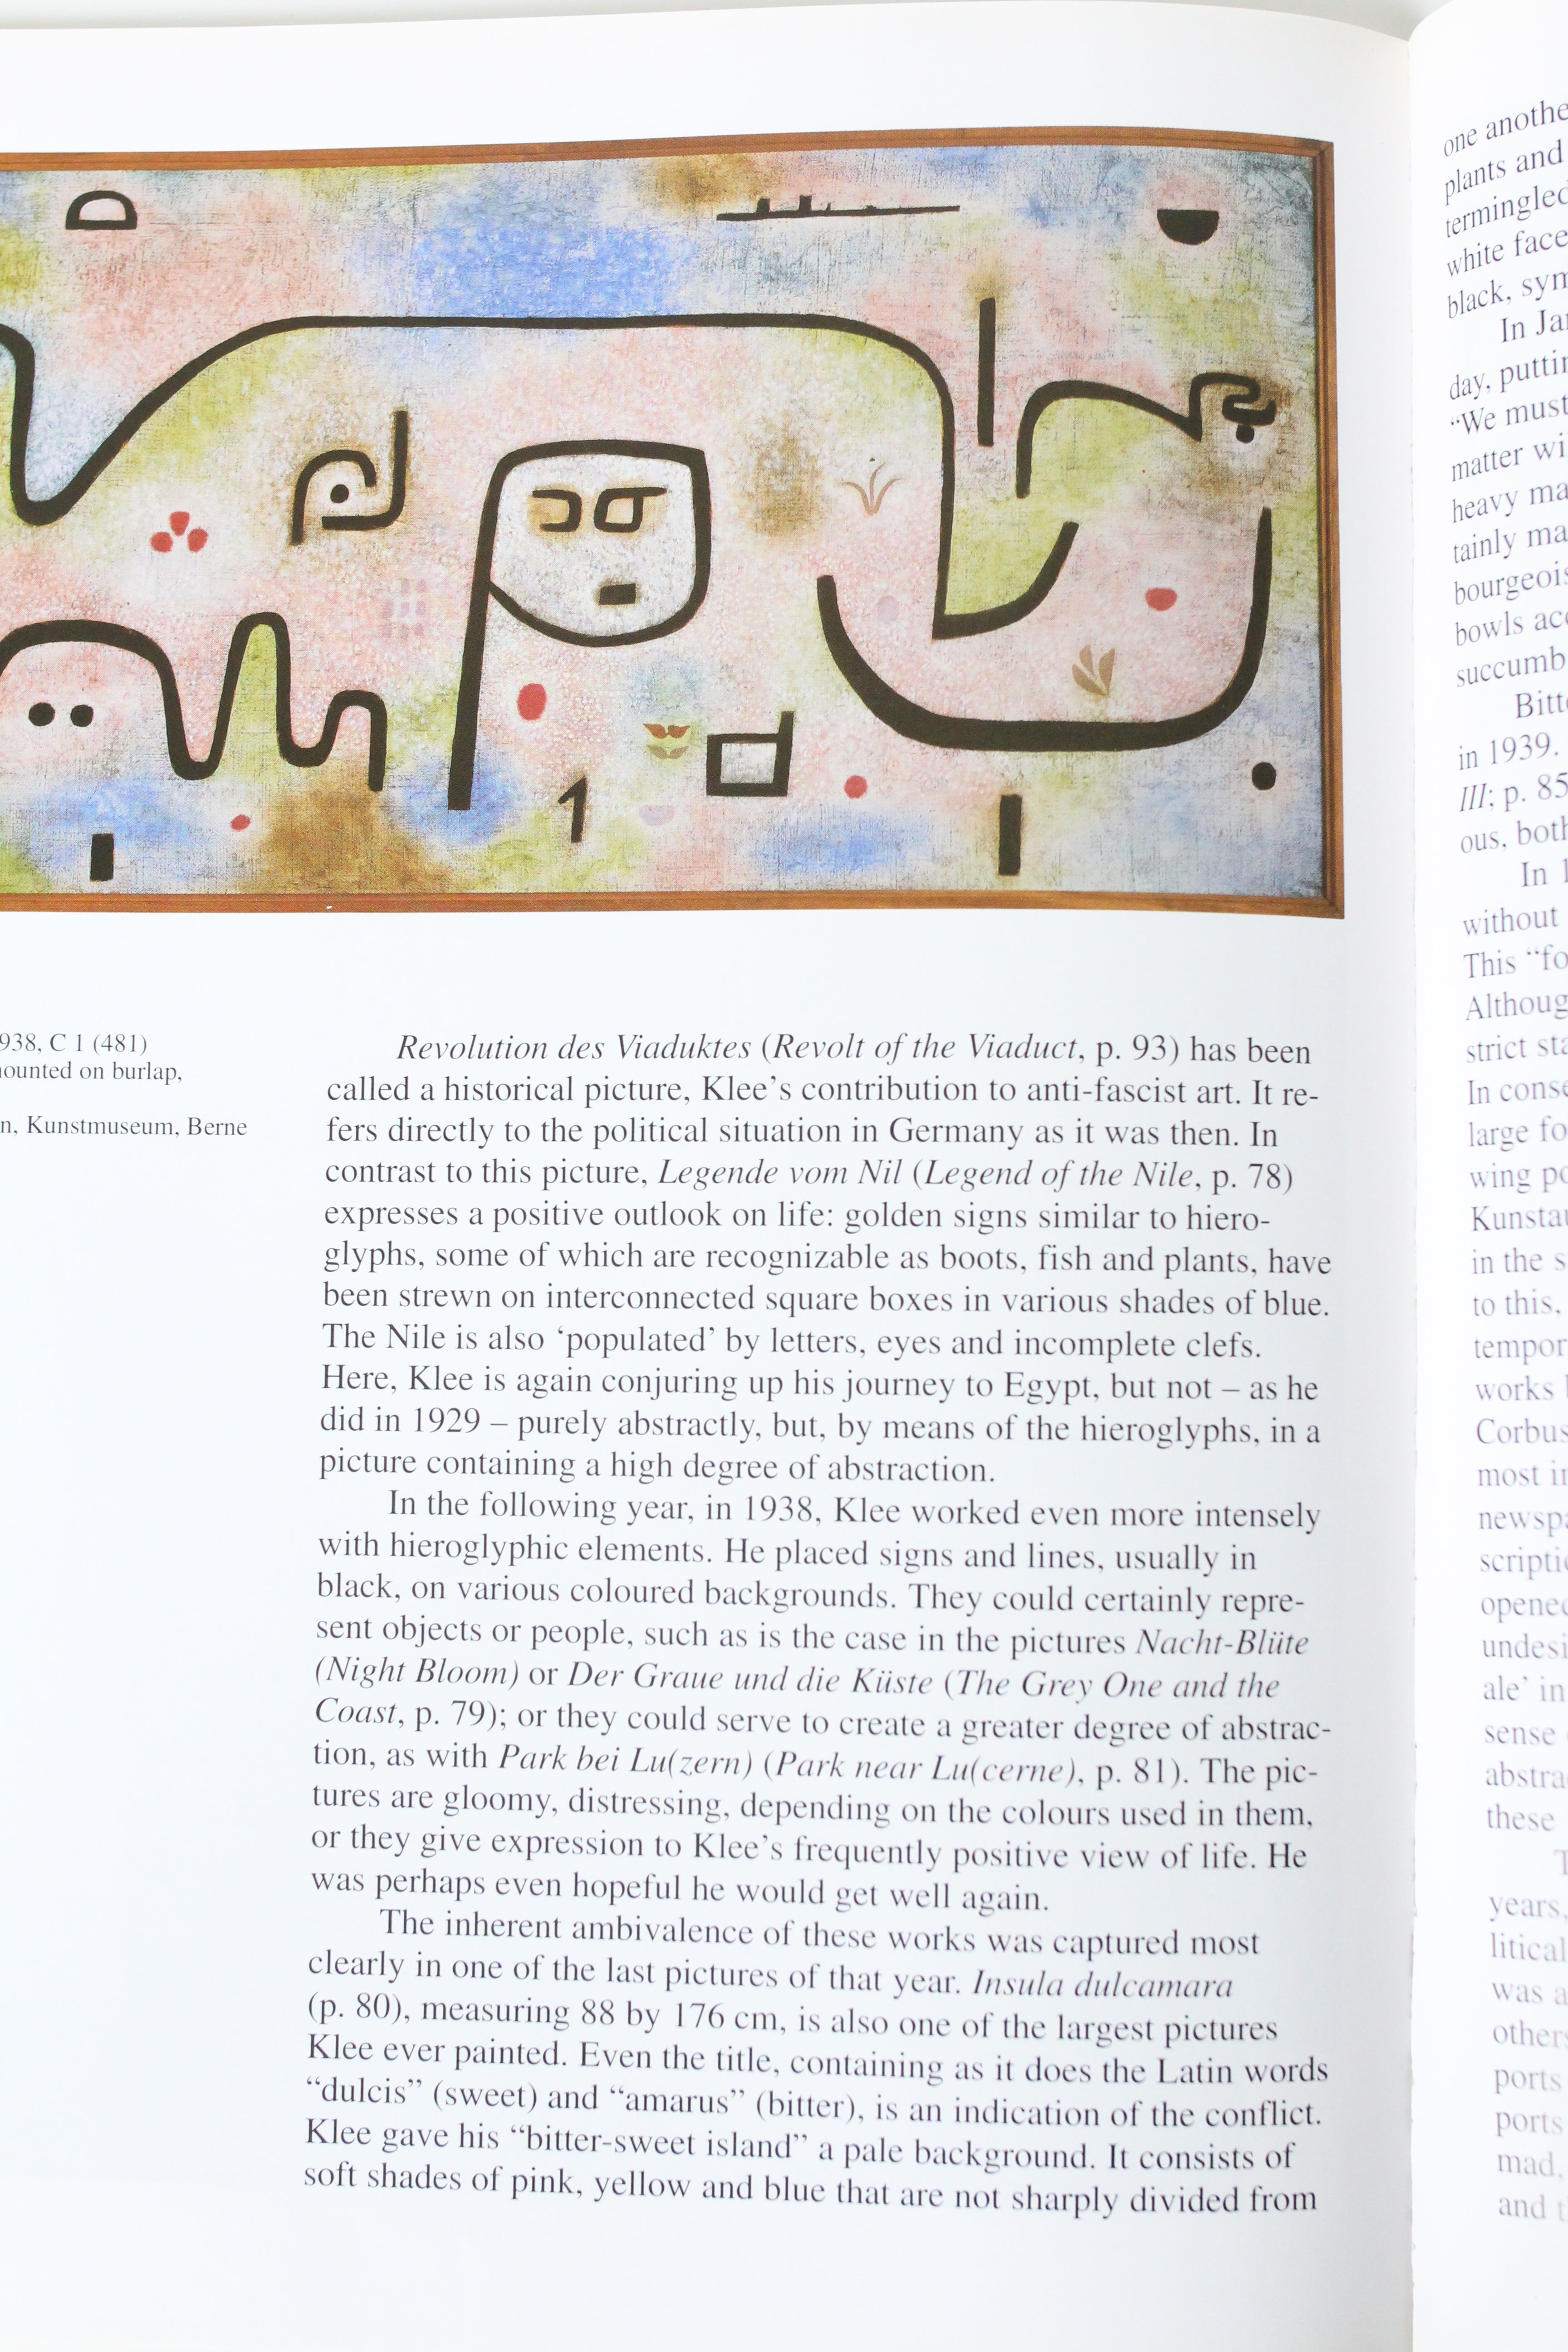 Paul Klee - TASCHEN 1994 m.